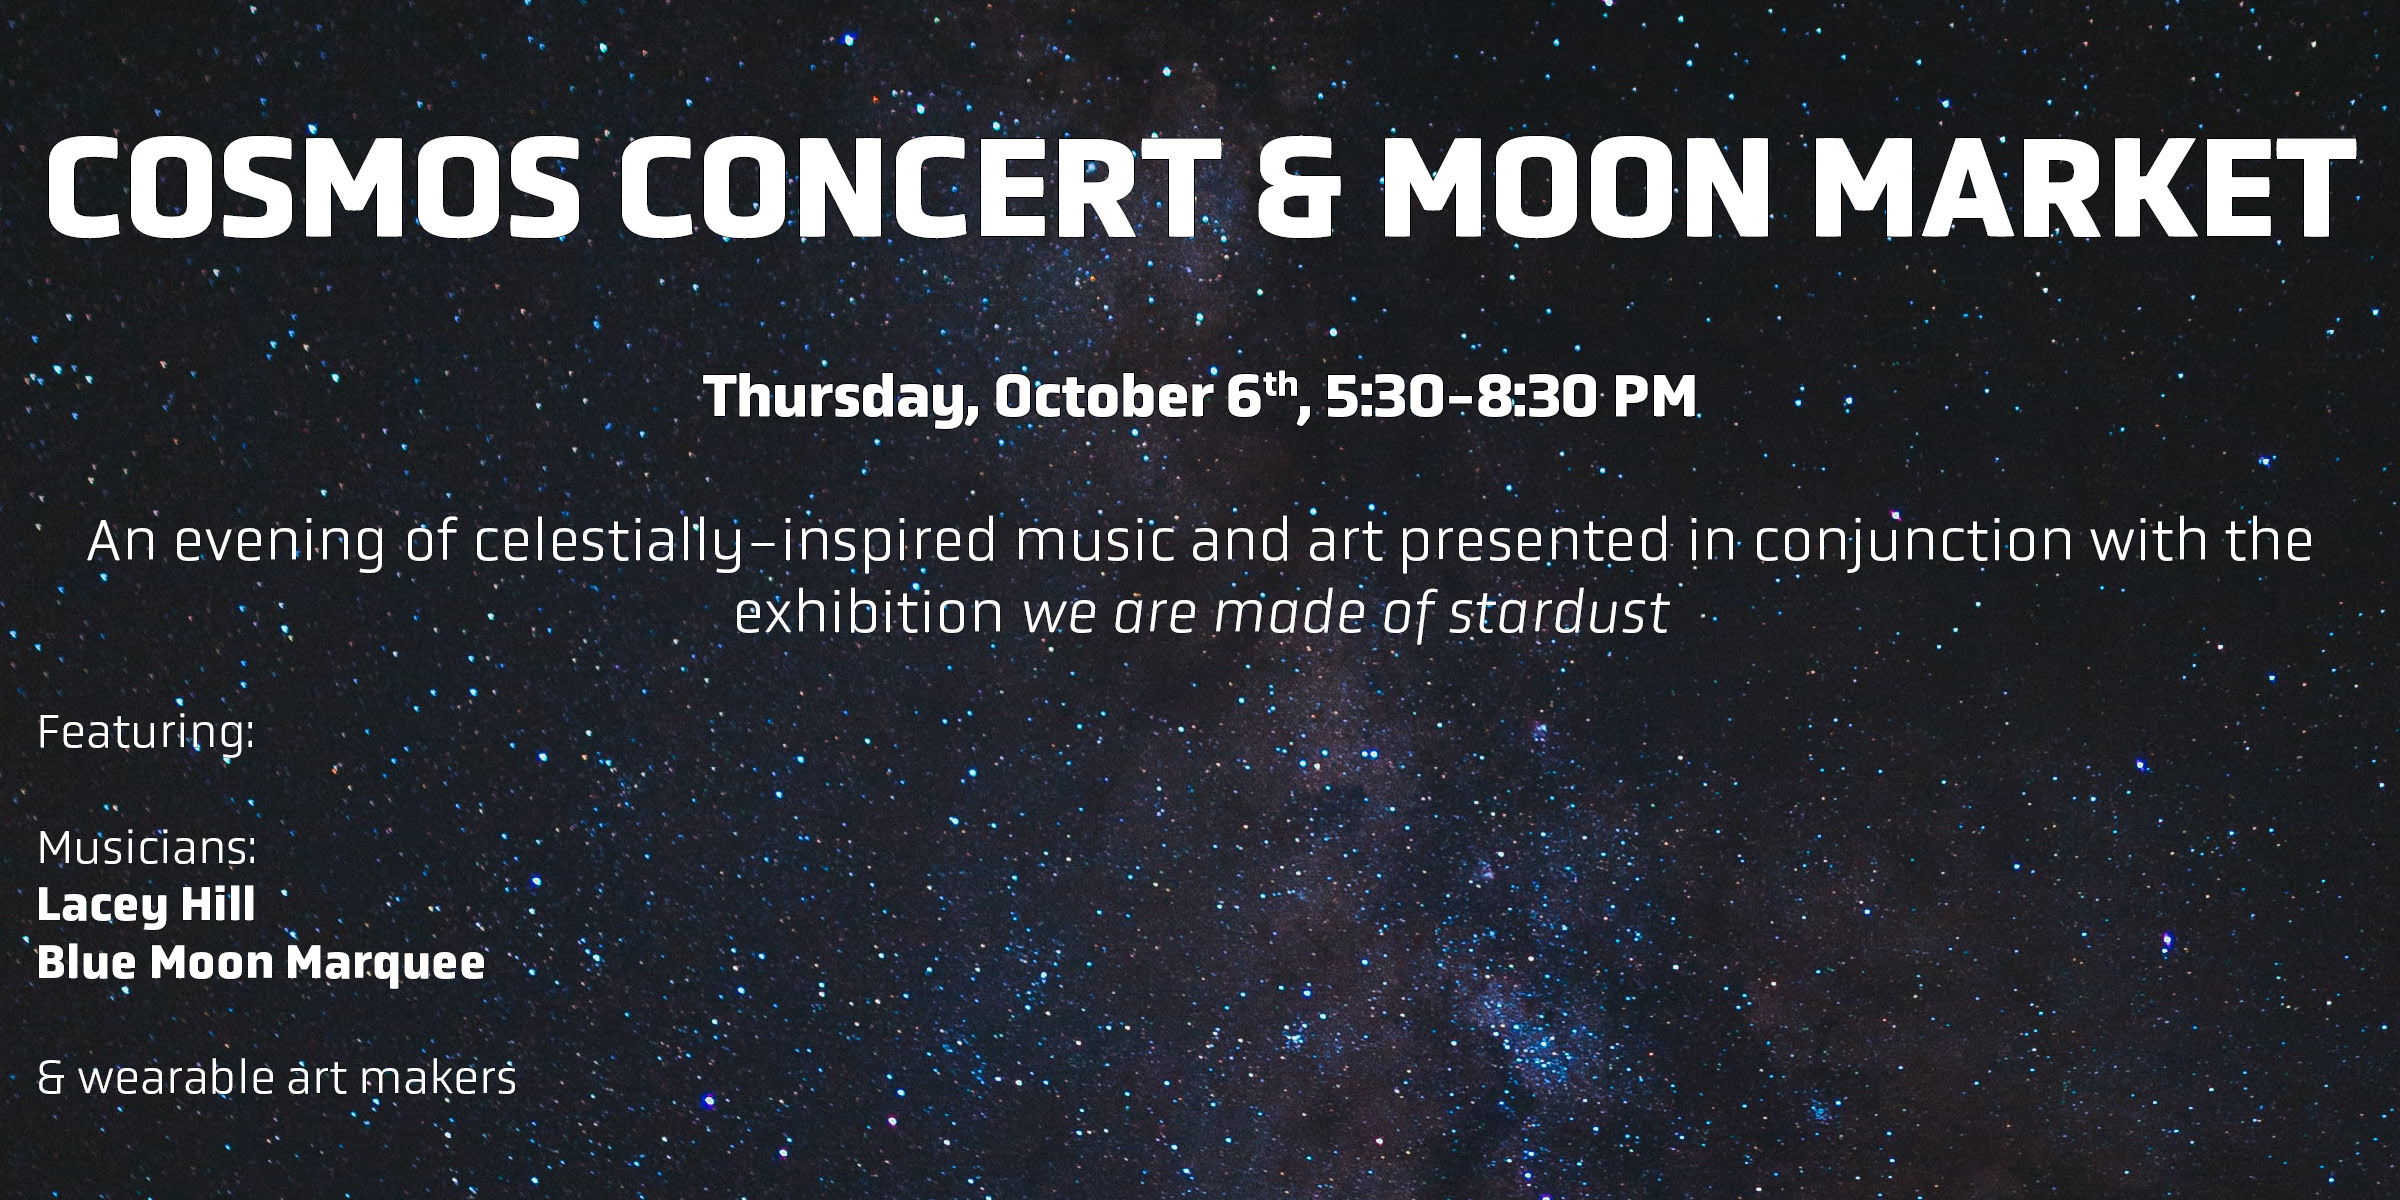 Cosmos Concert & Moon Market